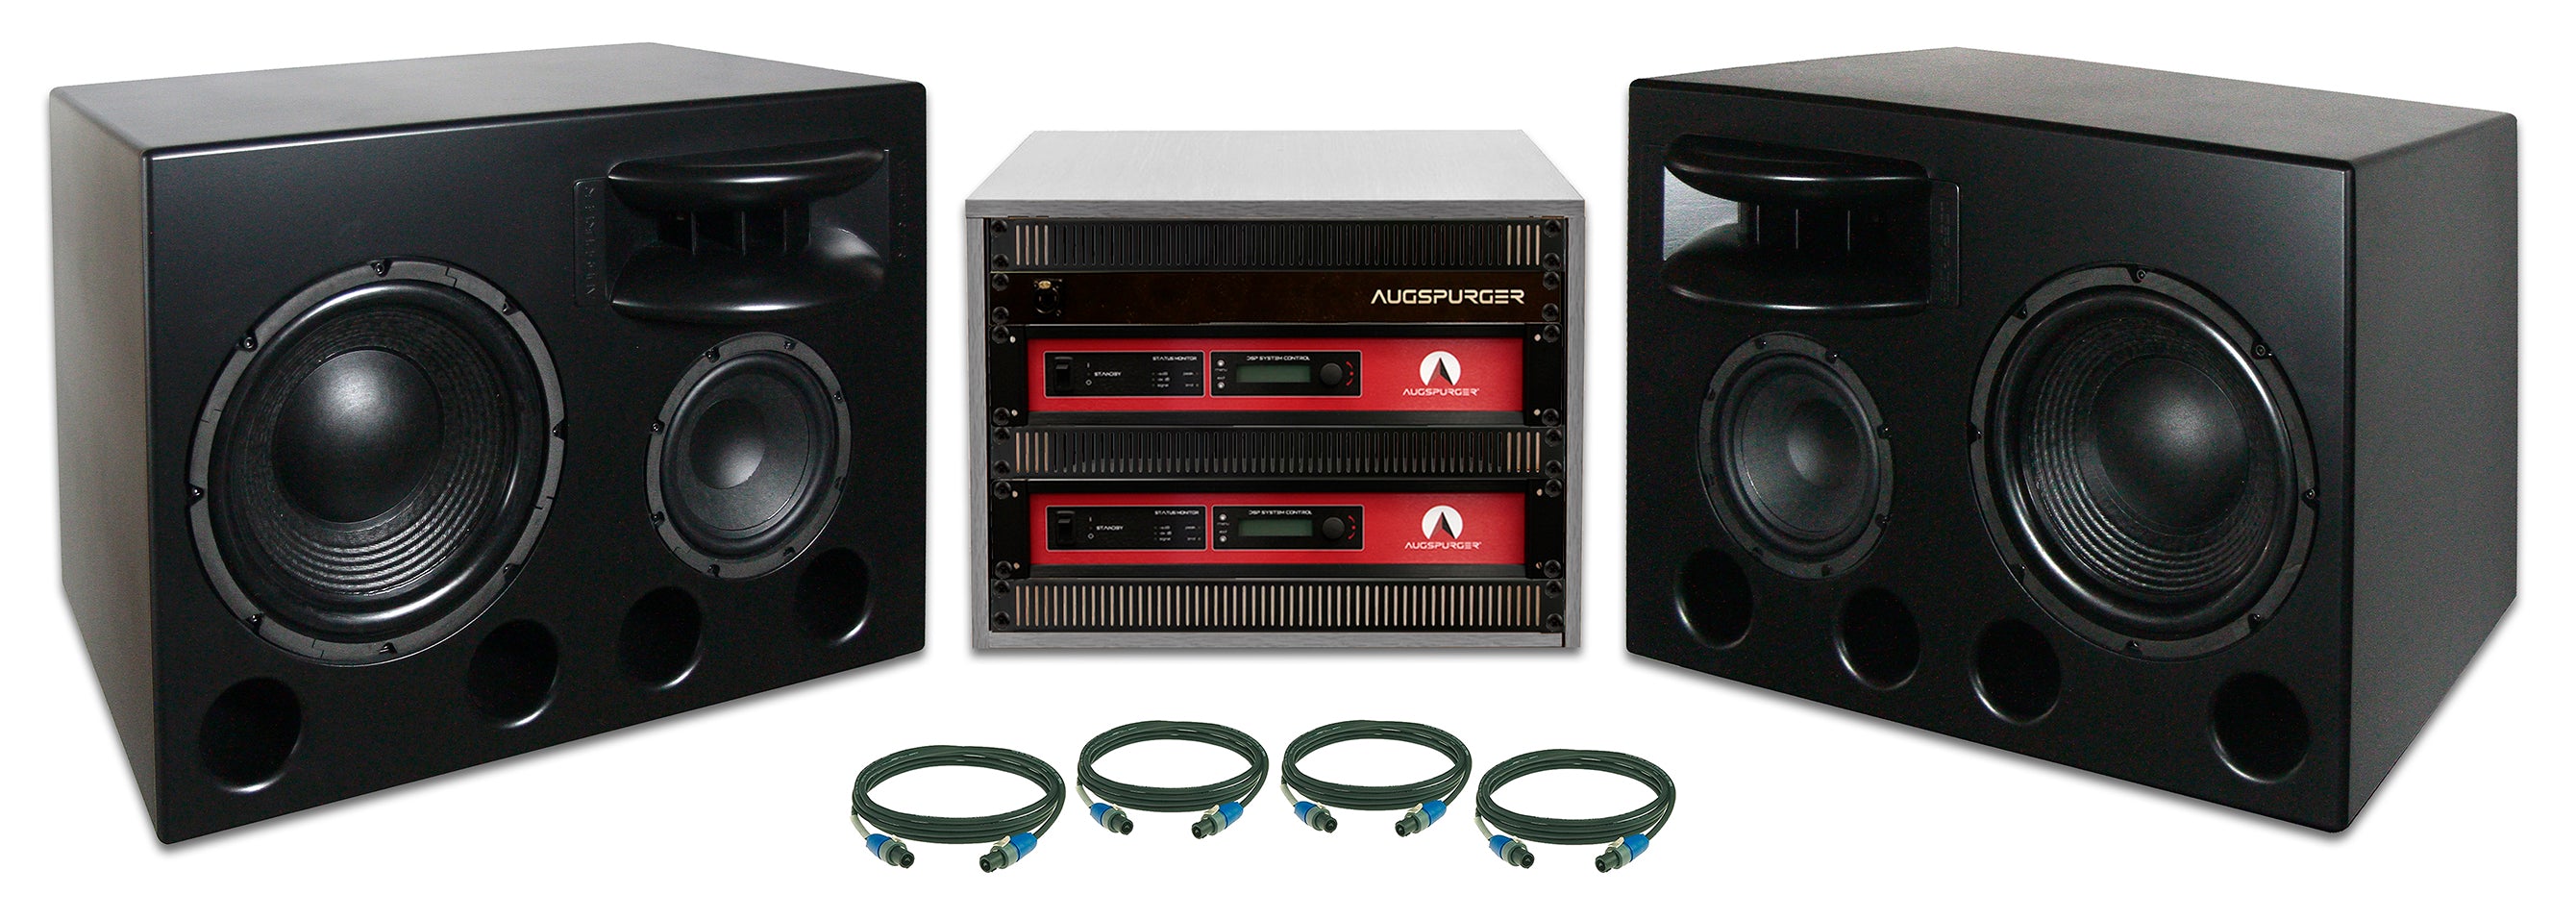 Augspurger Treo 812 CFM-SXE3/3500 System - Professional Audio Design, Inc